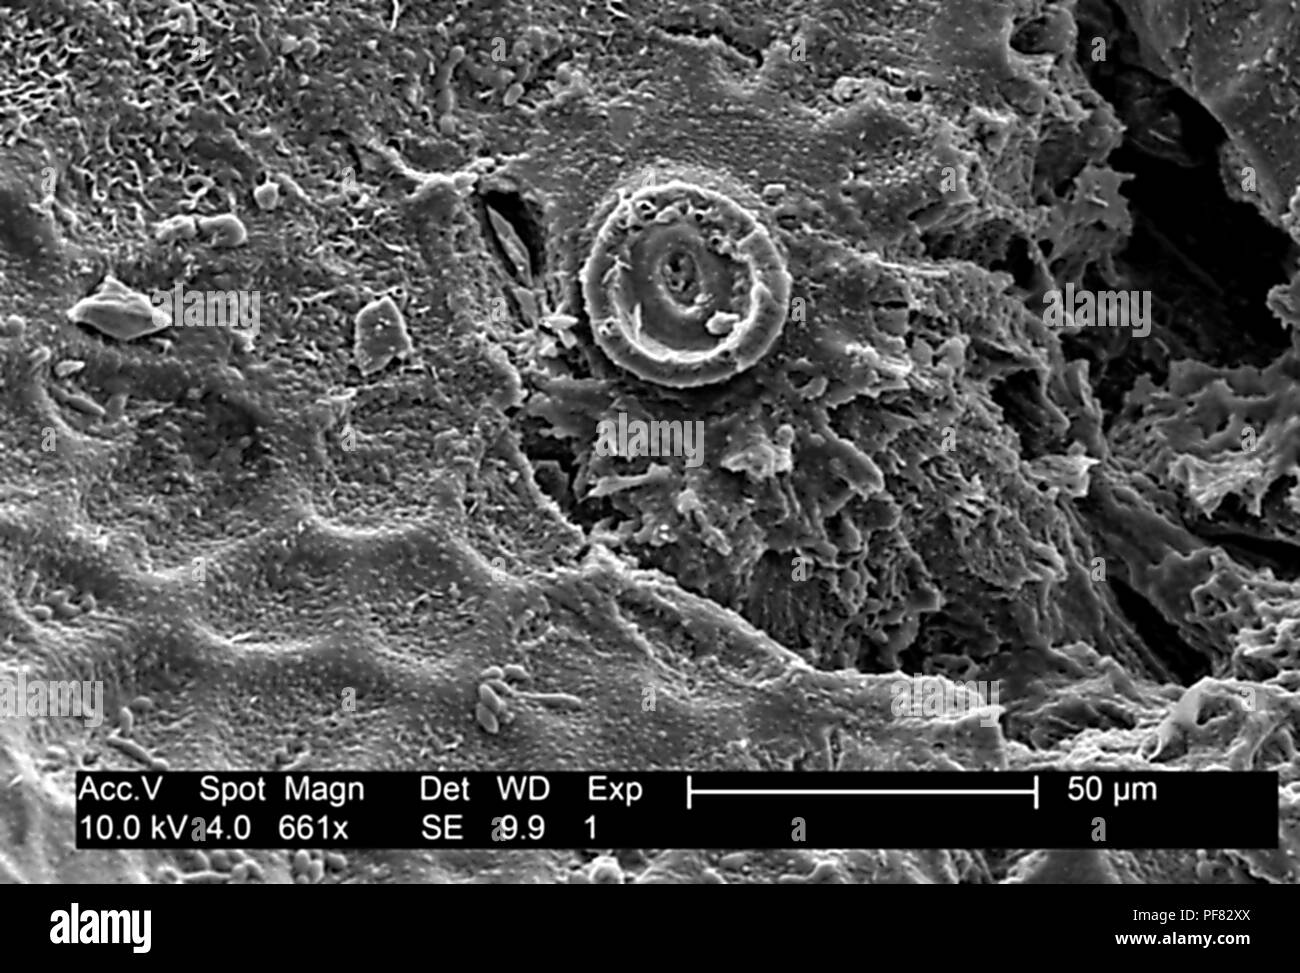 Superficie testurizzata dettagli trovati su un melone Honeydew (Cucumis melo), ha rivelato nel 661x ingrandito electron microfotografia film, 2004. Immagine cortesia di centri per il controllo delle malattie (CDC). () Foto Stock